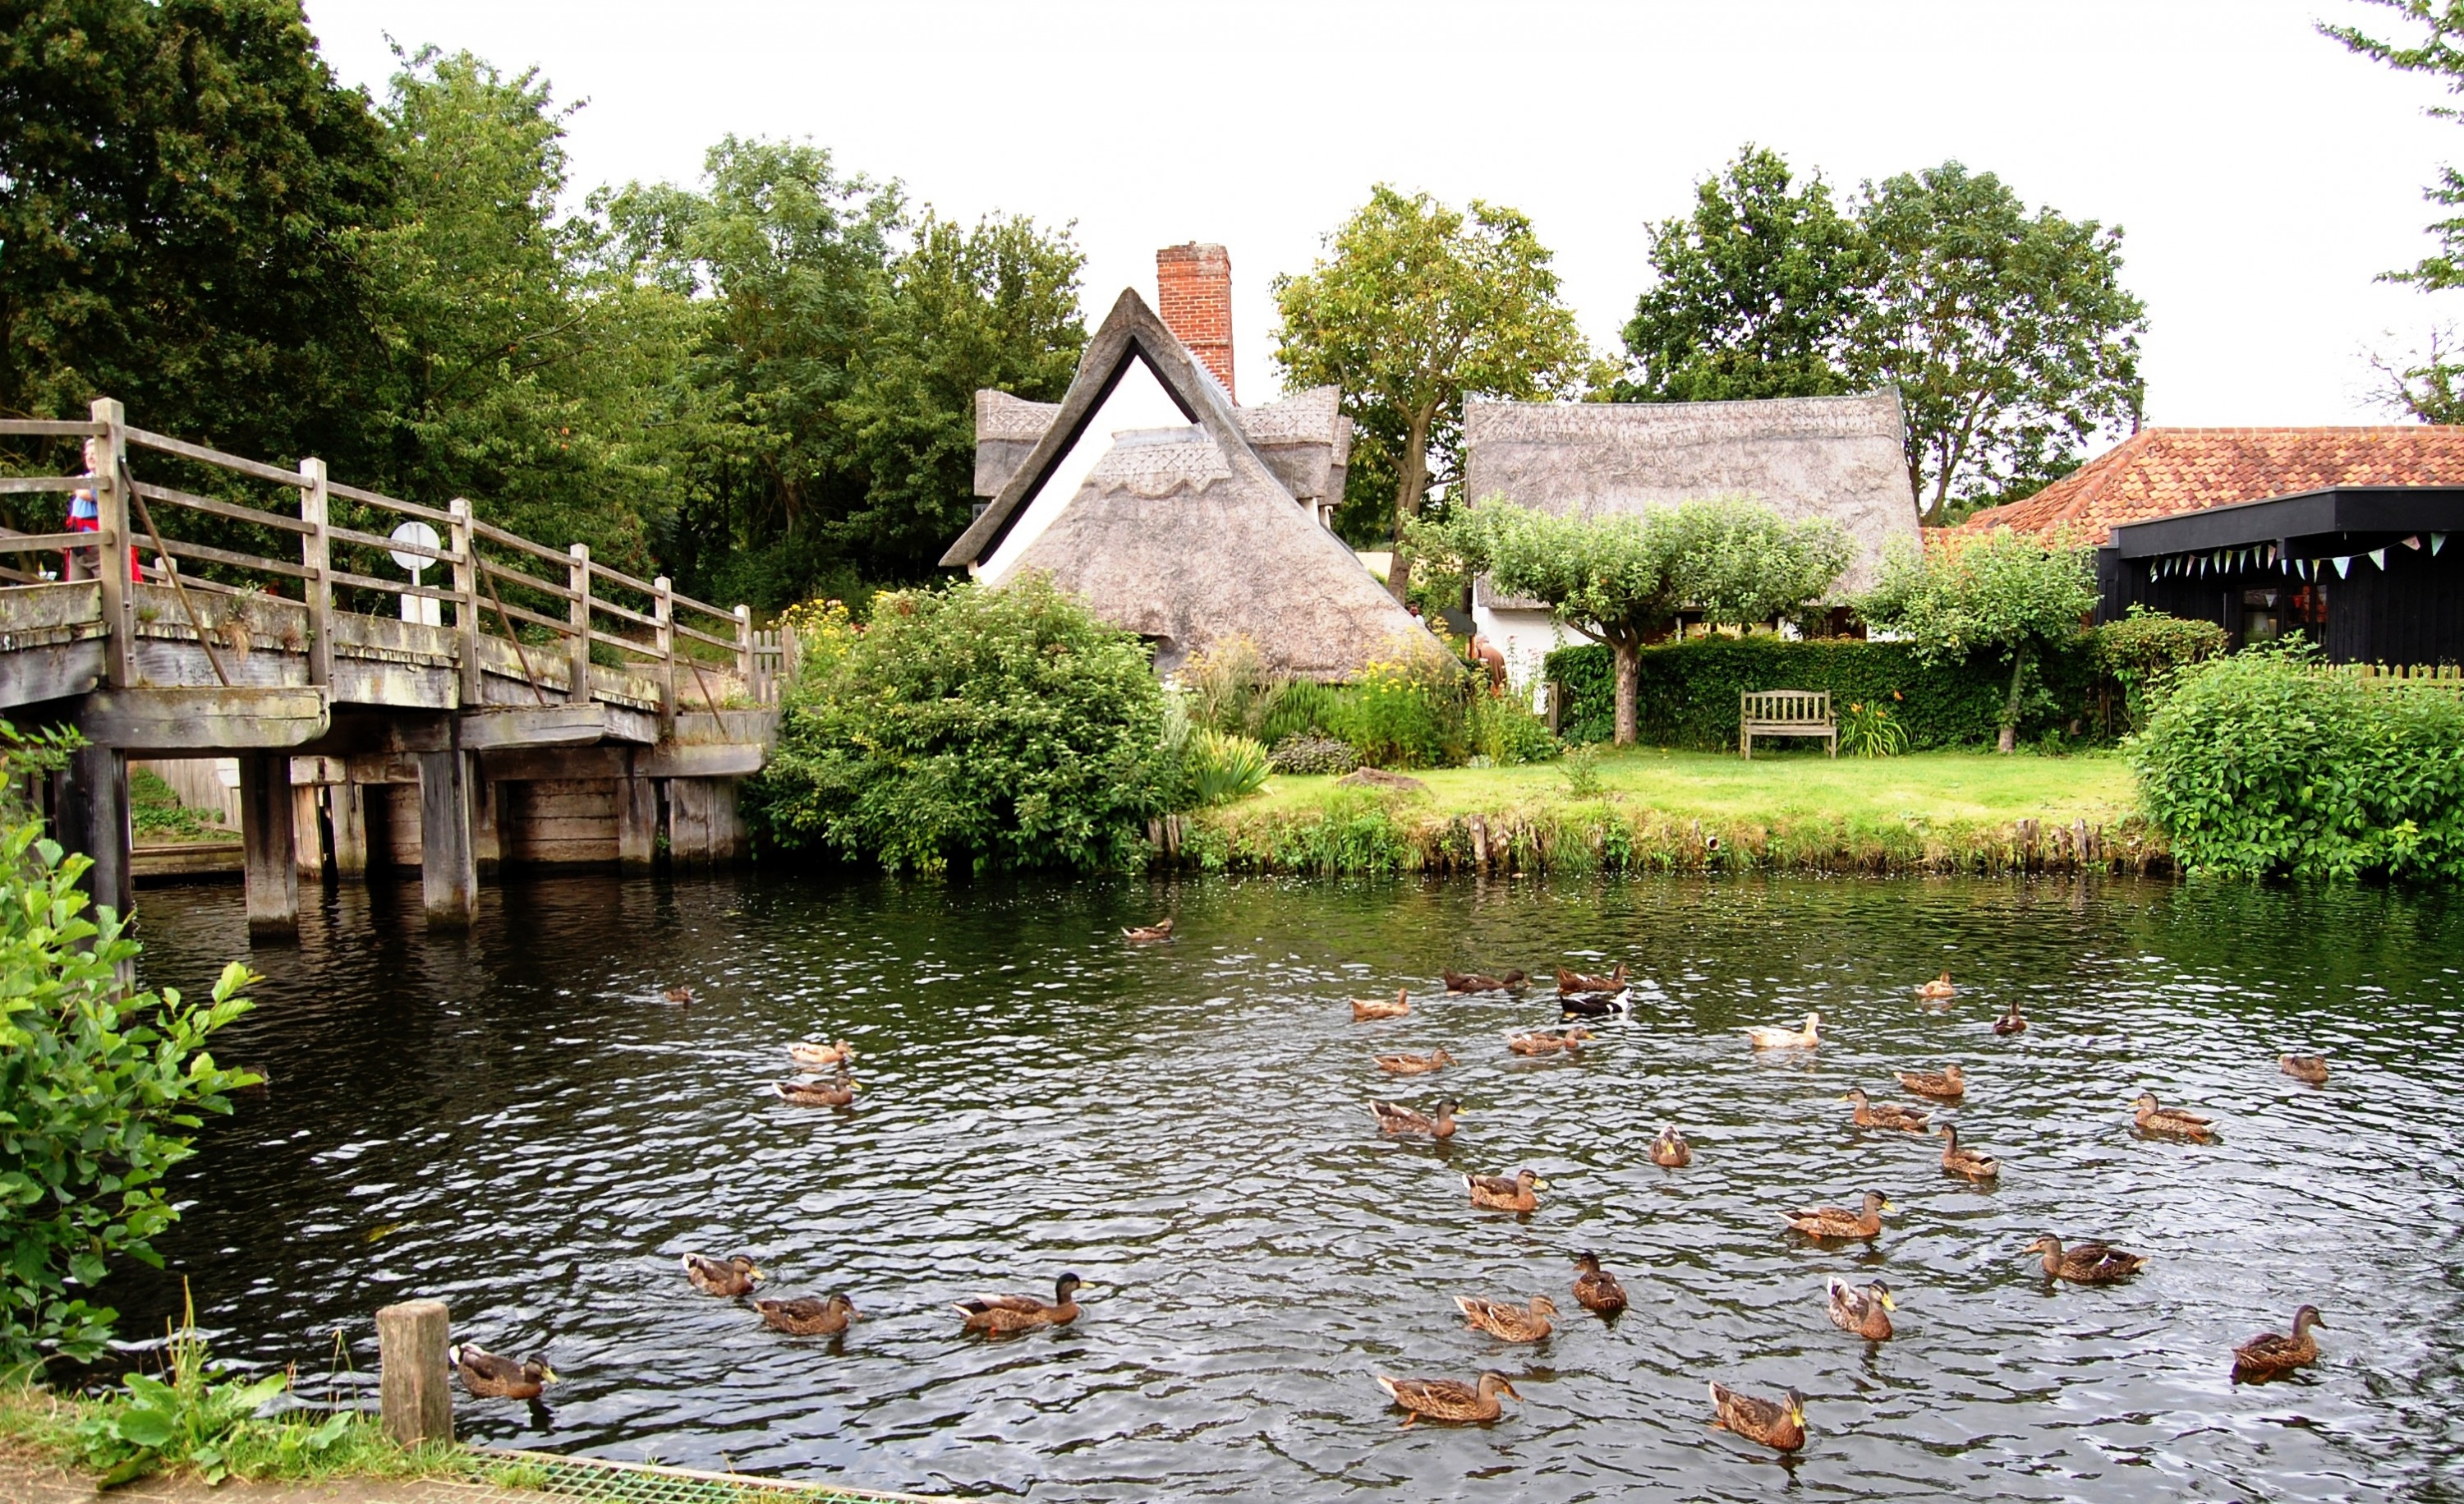 Du ngoạn miền quê nước Anh, ngắm những ngôi làng cổ xinh đẹp - 11